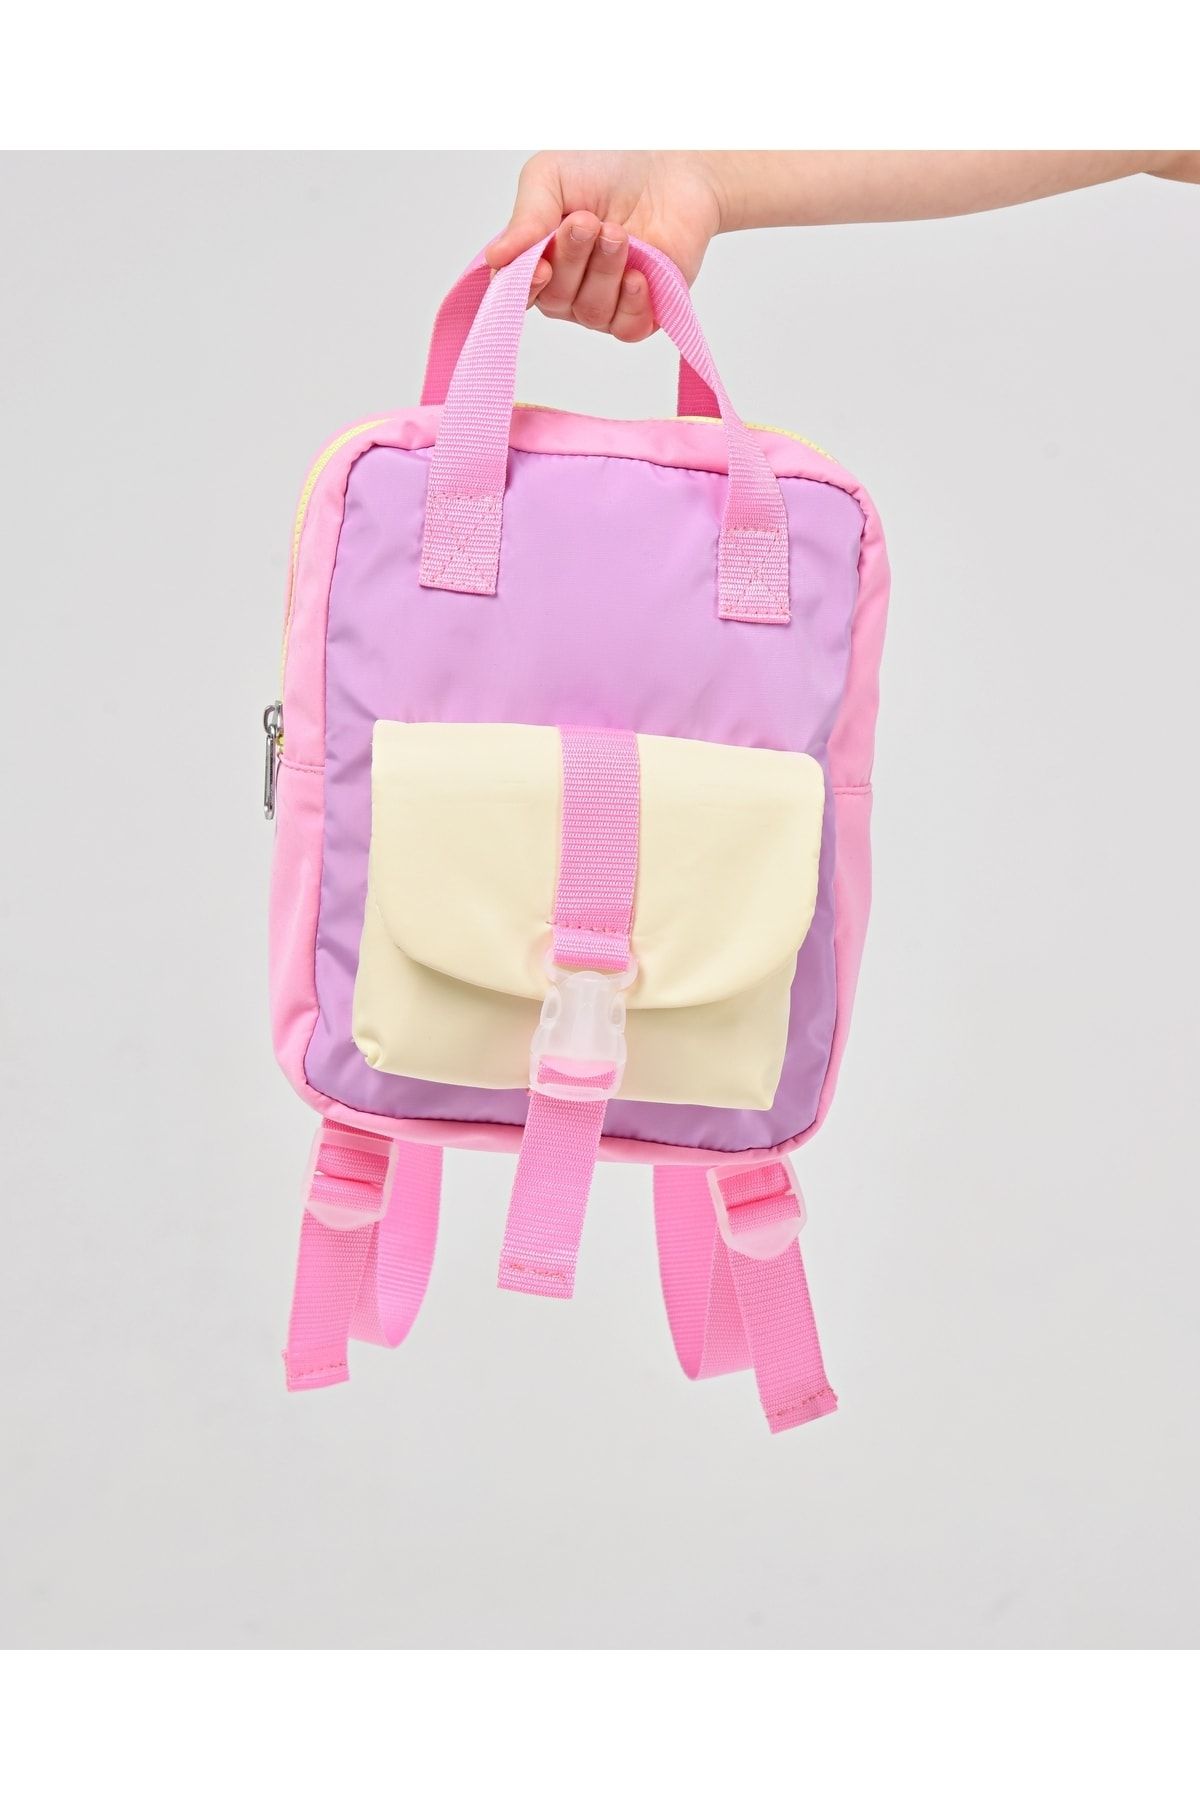 ICONE BAG Icone Kız Çocuk Çantası, Çift Renkli Kilit Detaylı Küçük Sırt Çantası, El Ve Omuzda Taşınabilir